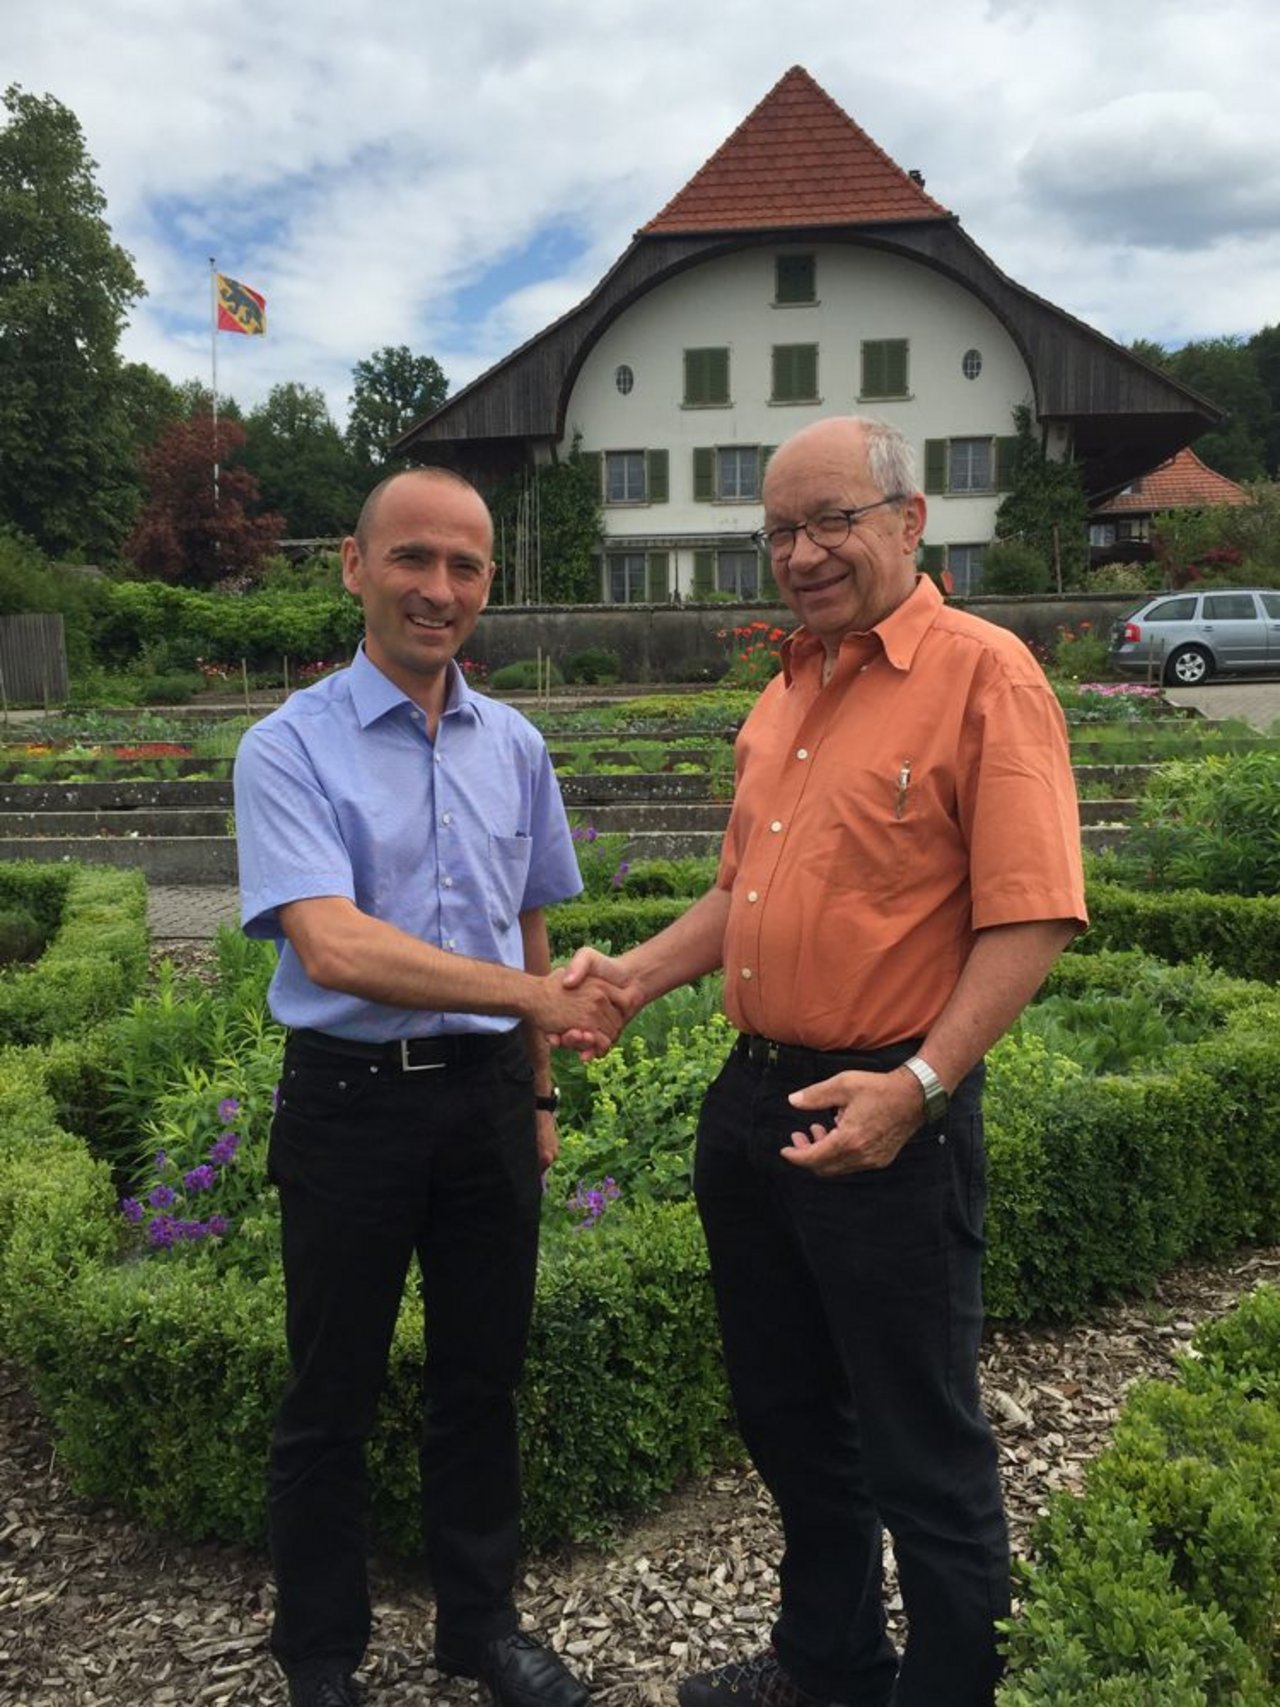 Der neue Inforama-Leiter Markus Wildisen (links) besucht am Montag mit Hans Peter Baumann, dem interimistischen Leiter des Inforama, den Standort Waldhof in Langenthal. (Bild zVg)